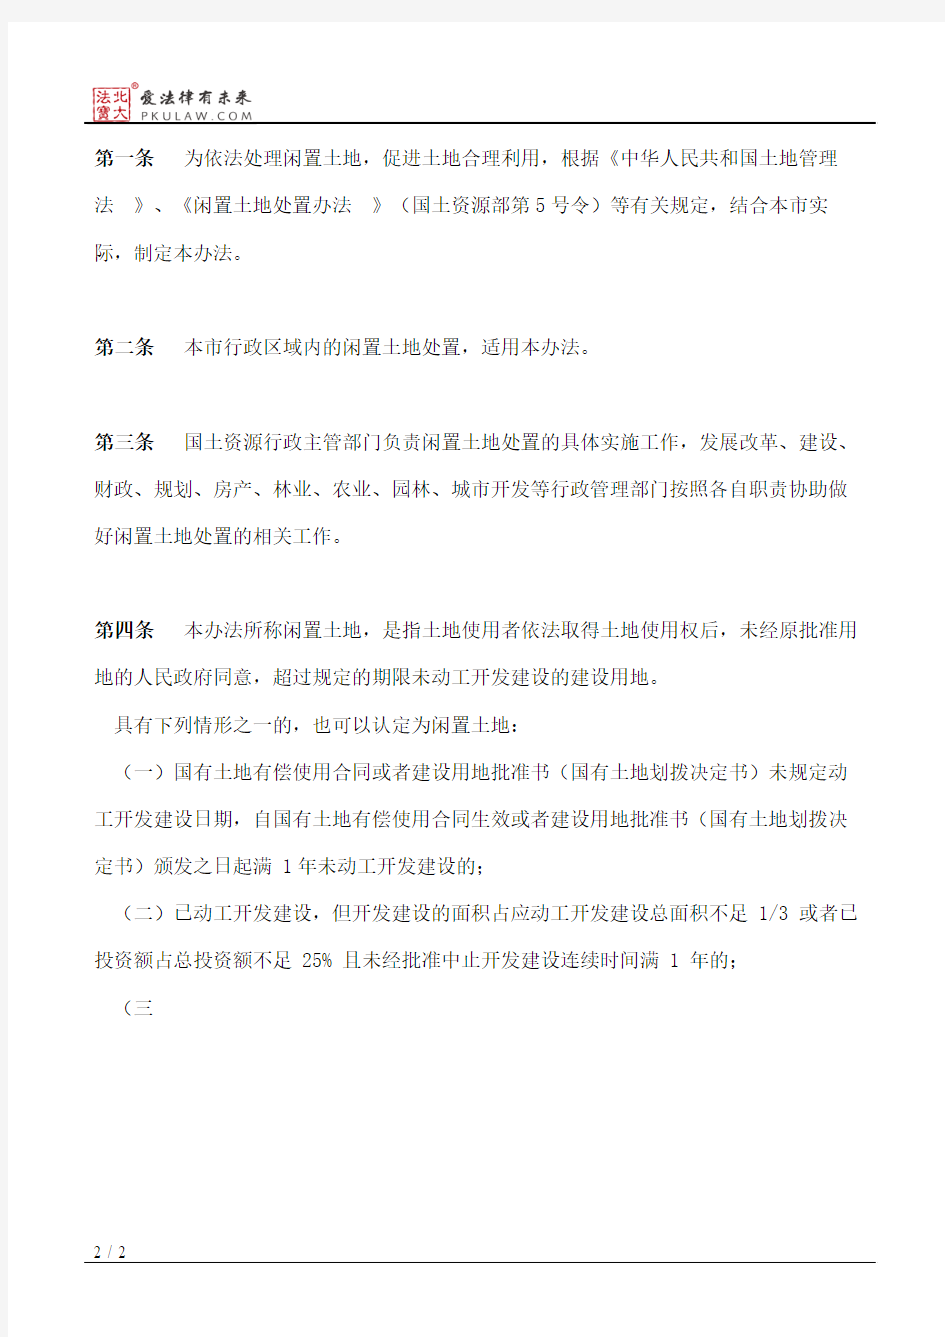 武汉市人民政府关于印发武汉市闲置土地处置办法的通知